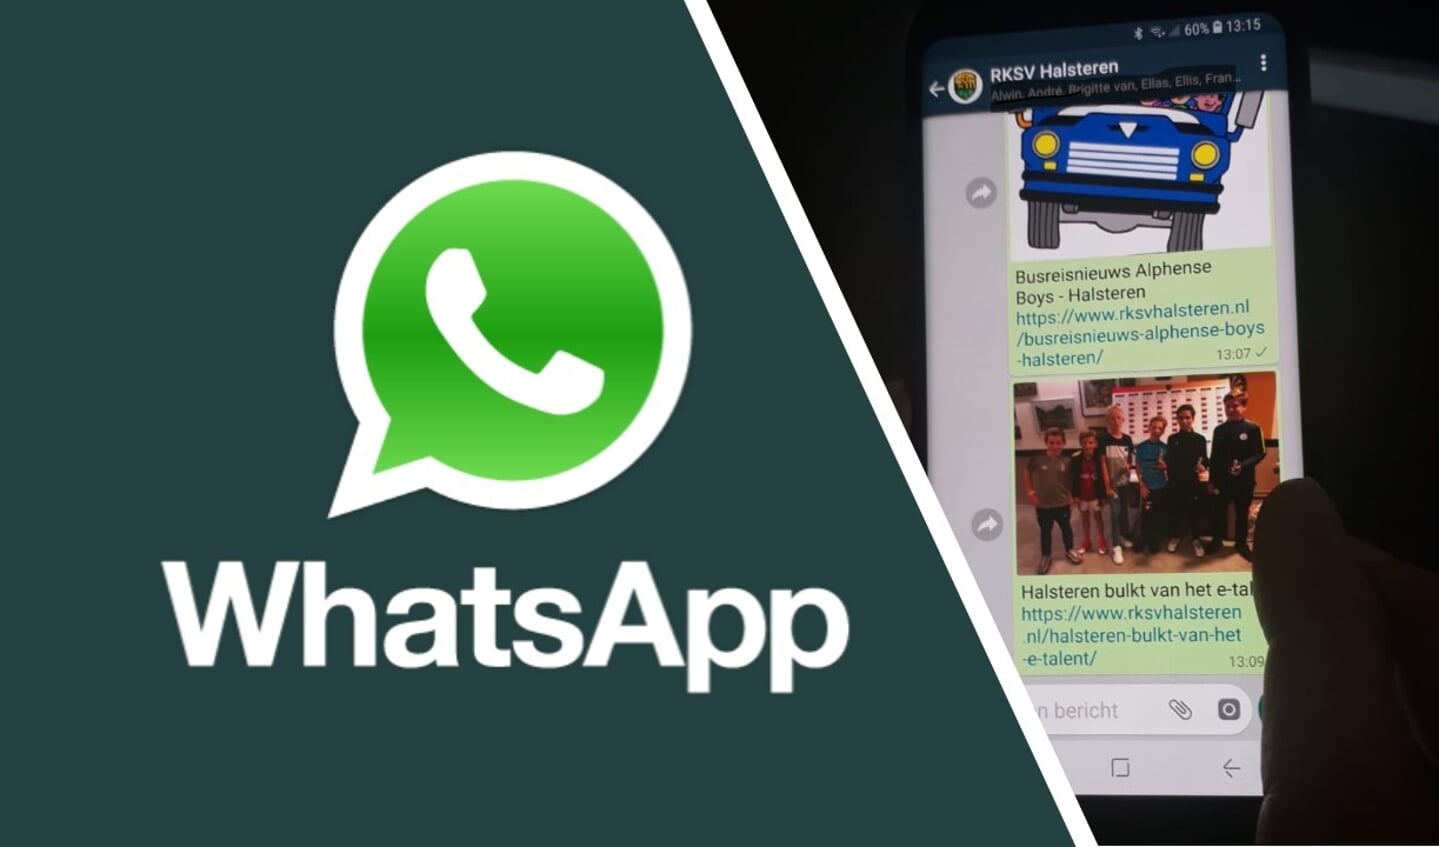 Meld je aan voor de Whatsapp service!